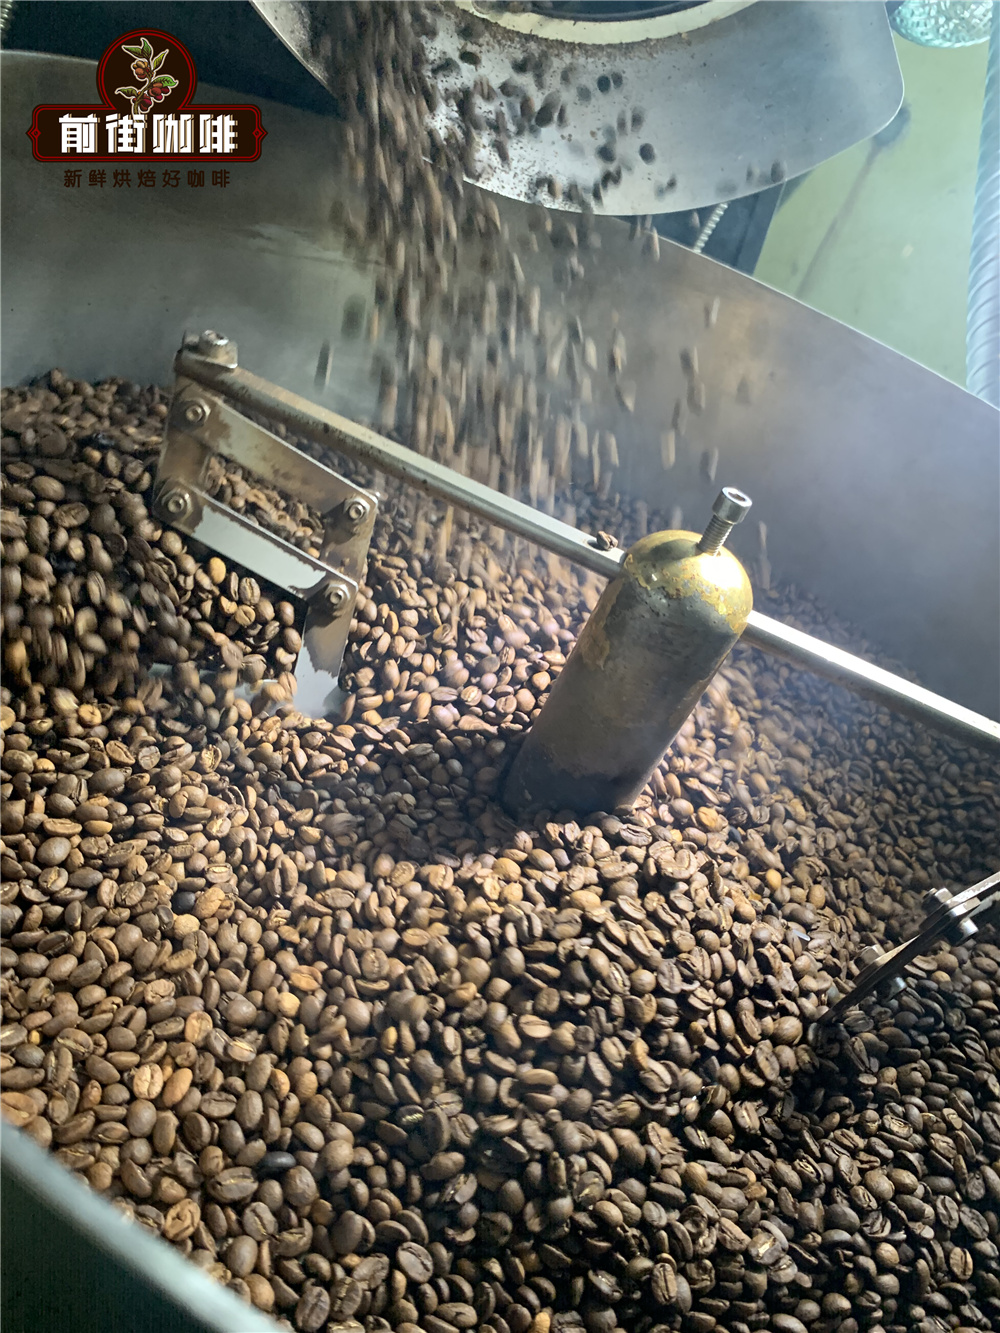 酒桶處理法的雪莉咖啡和聖荷西咖啡的品種烘焙和風味的區別